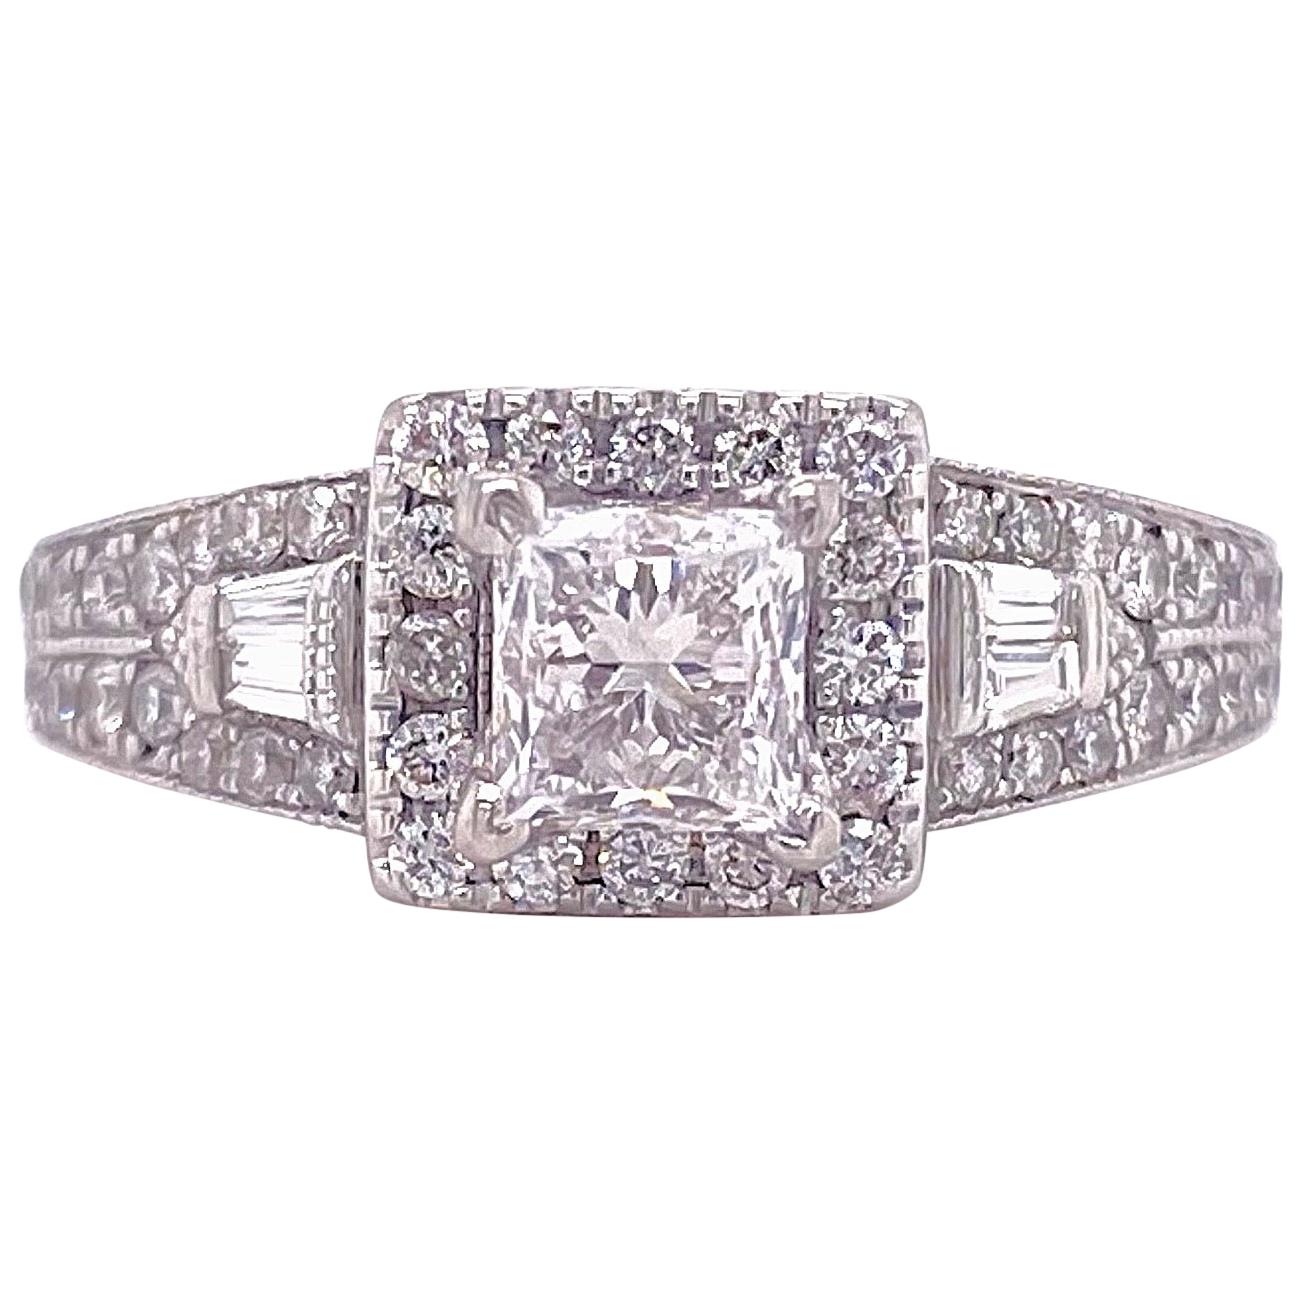 Neil Lane Princess Diamond 1.50 Carat Engagement Ring in 14 Karat White Gold